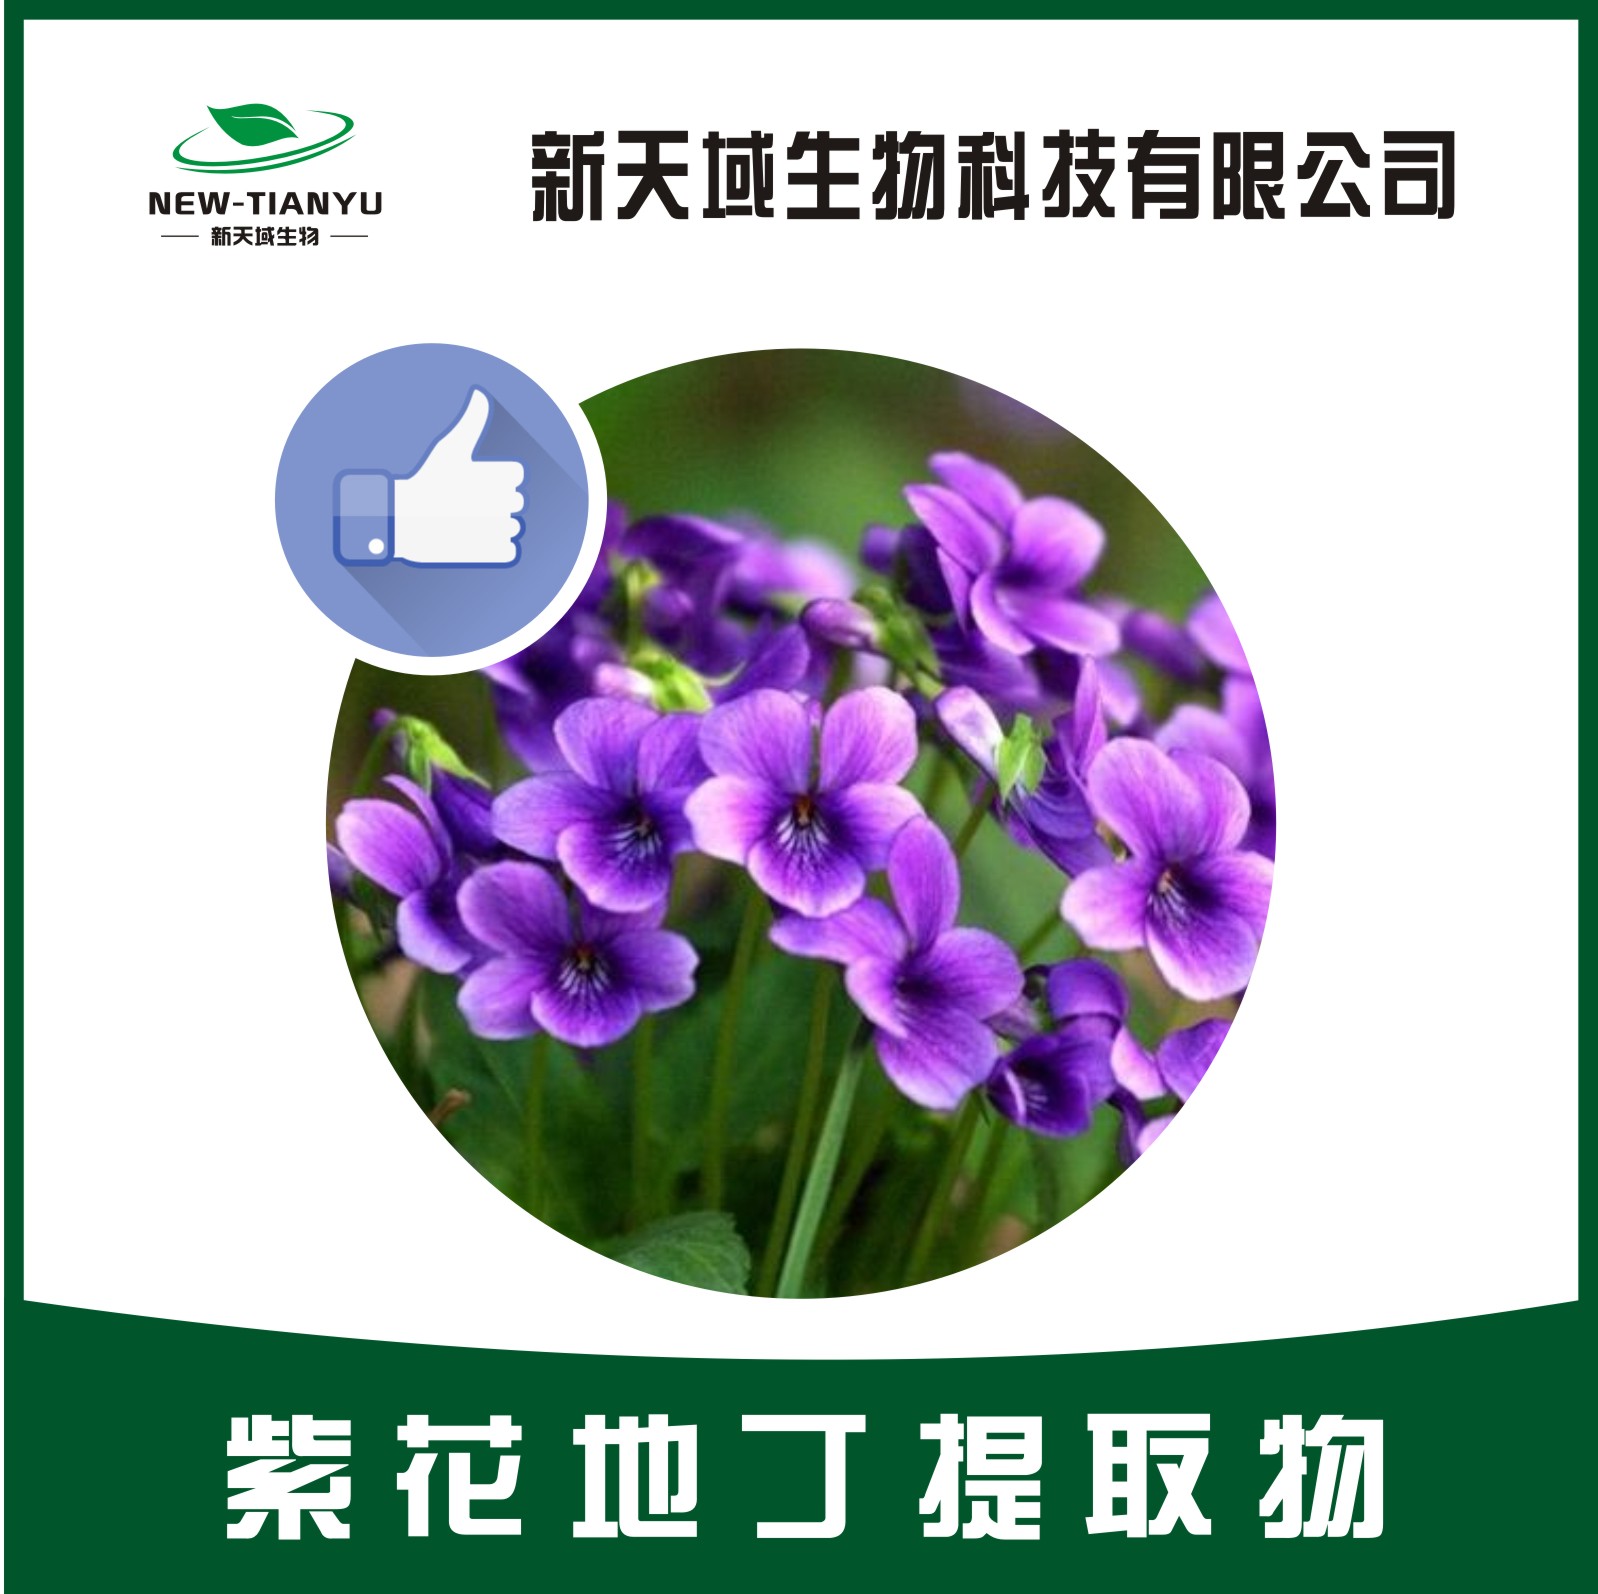 紫花地丁提取物厂家直销物美价价格厂家 陕西新天域生物科技有限公司